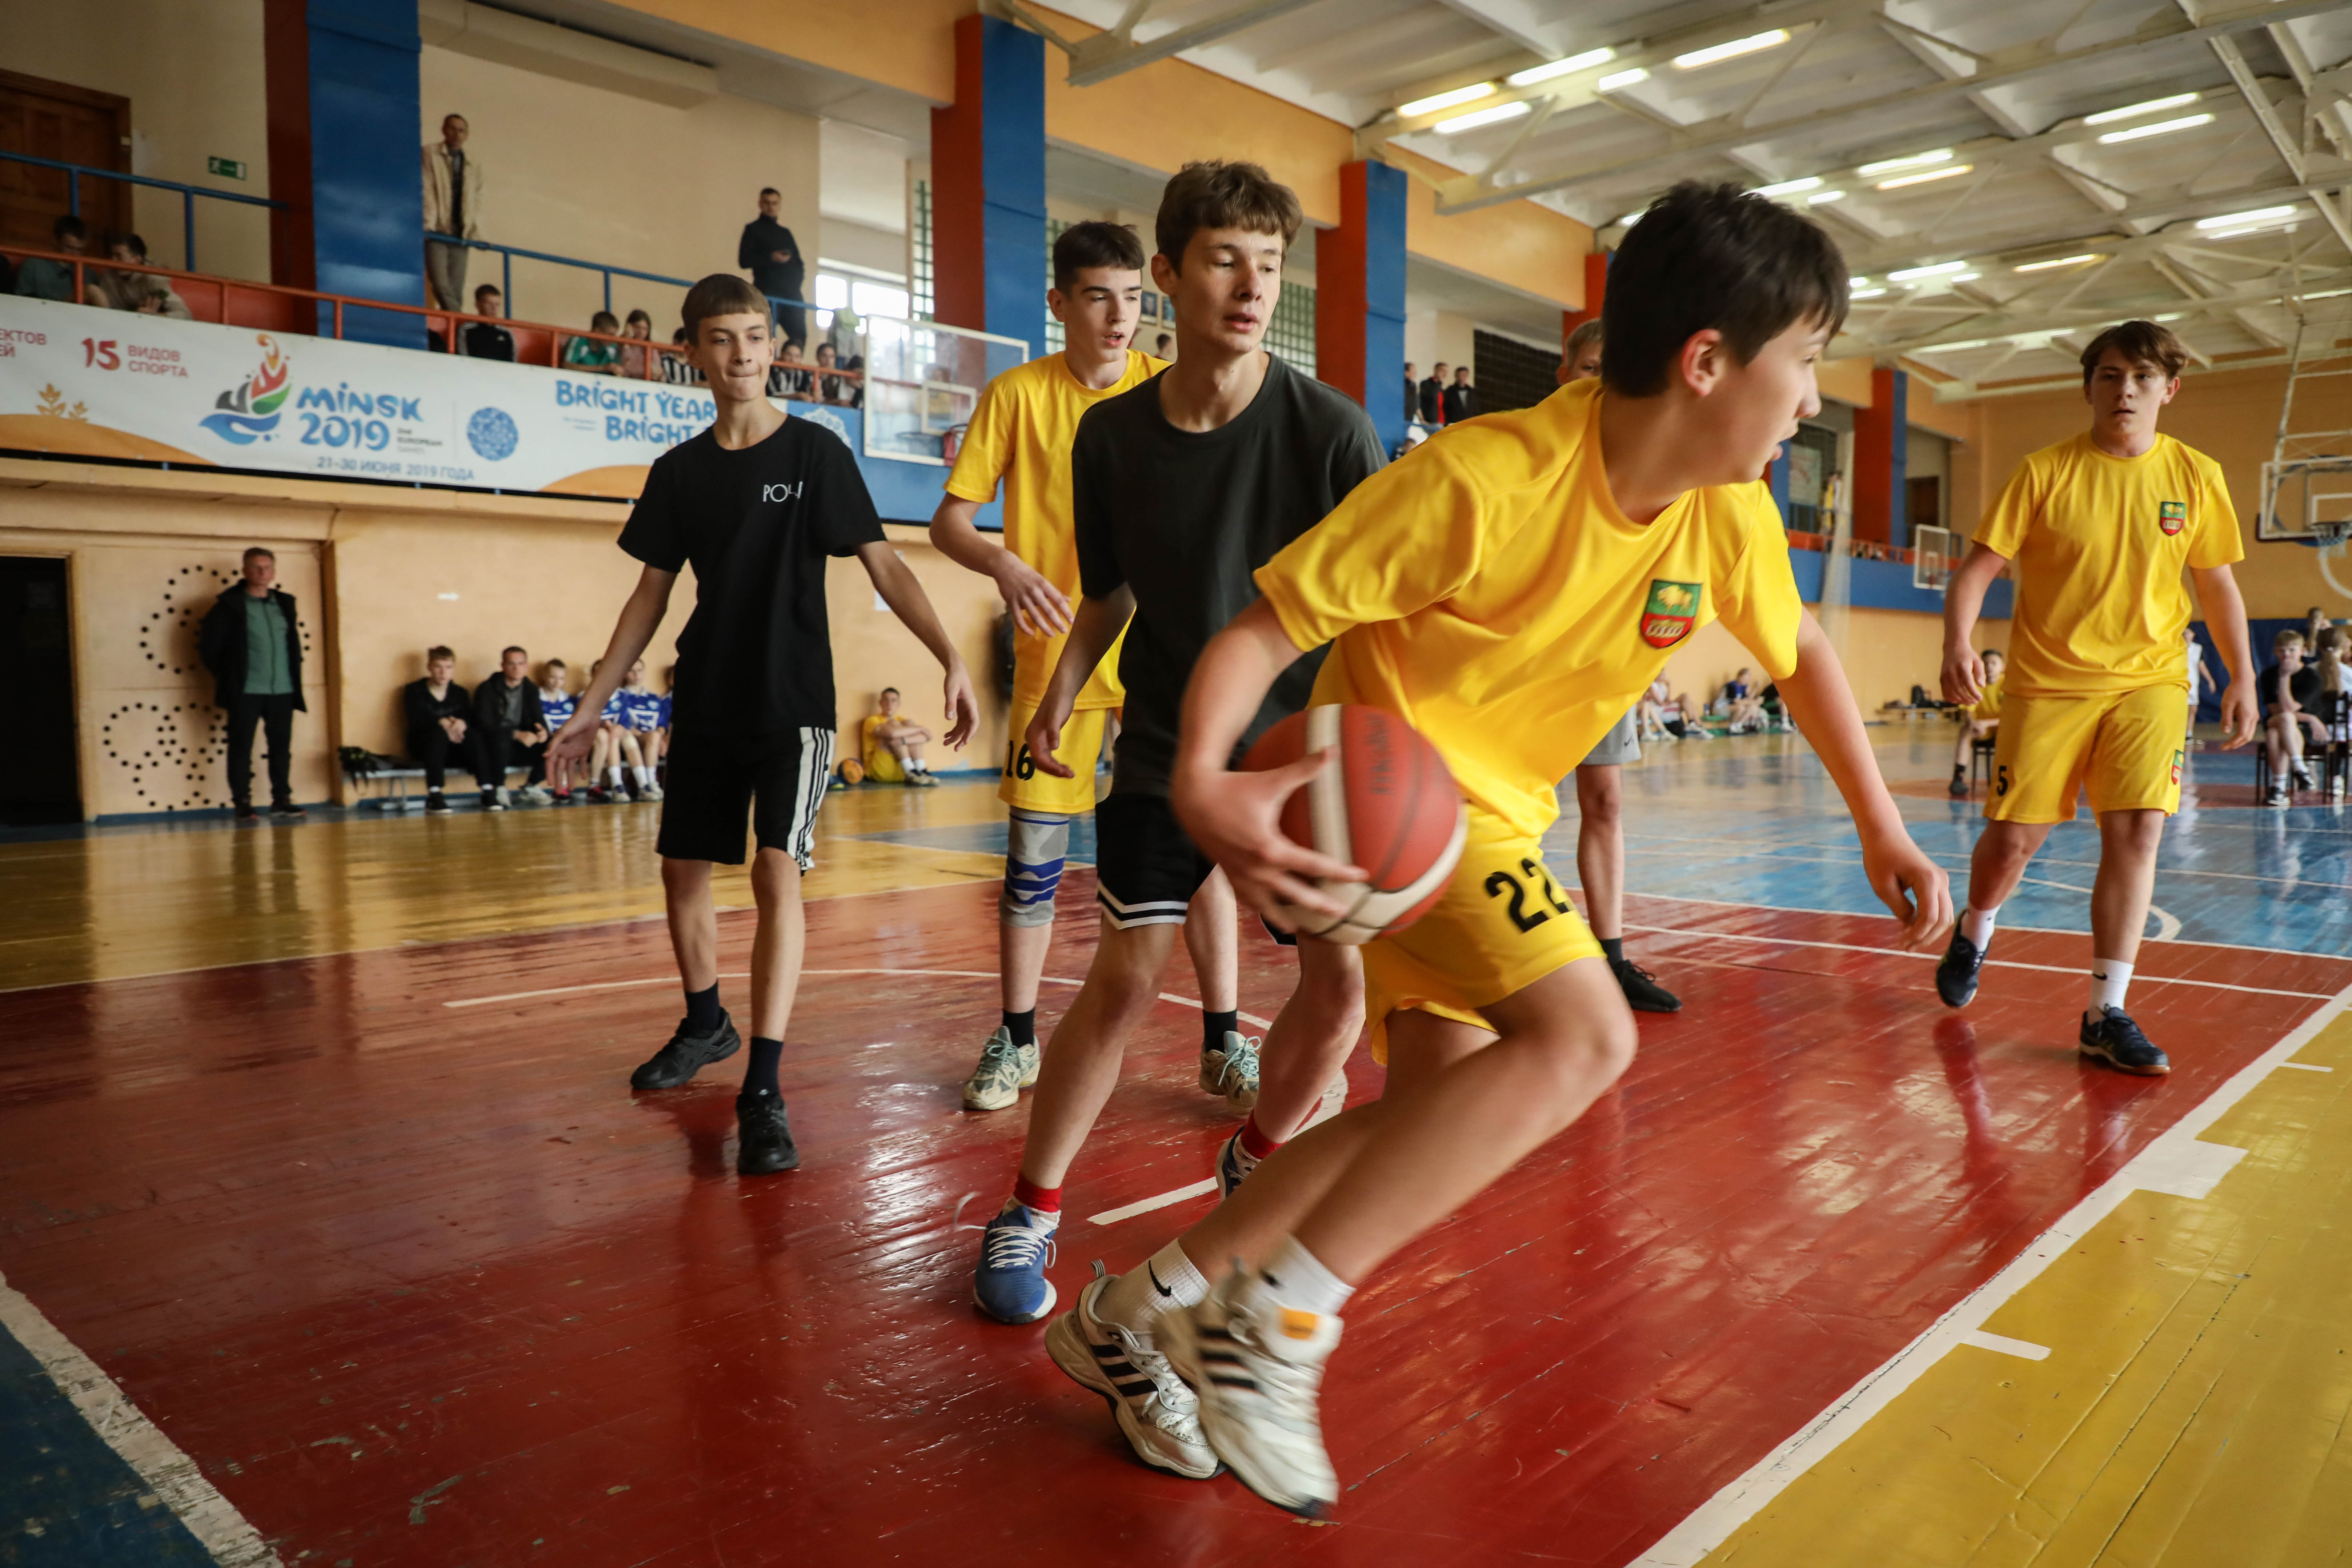 Сморгонь принимает областную спартакиаду по баскетболу среди юношей и девушек